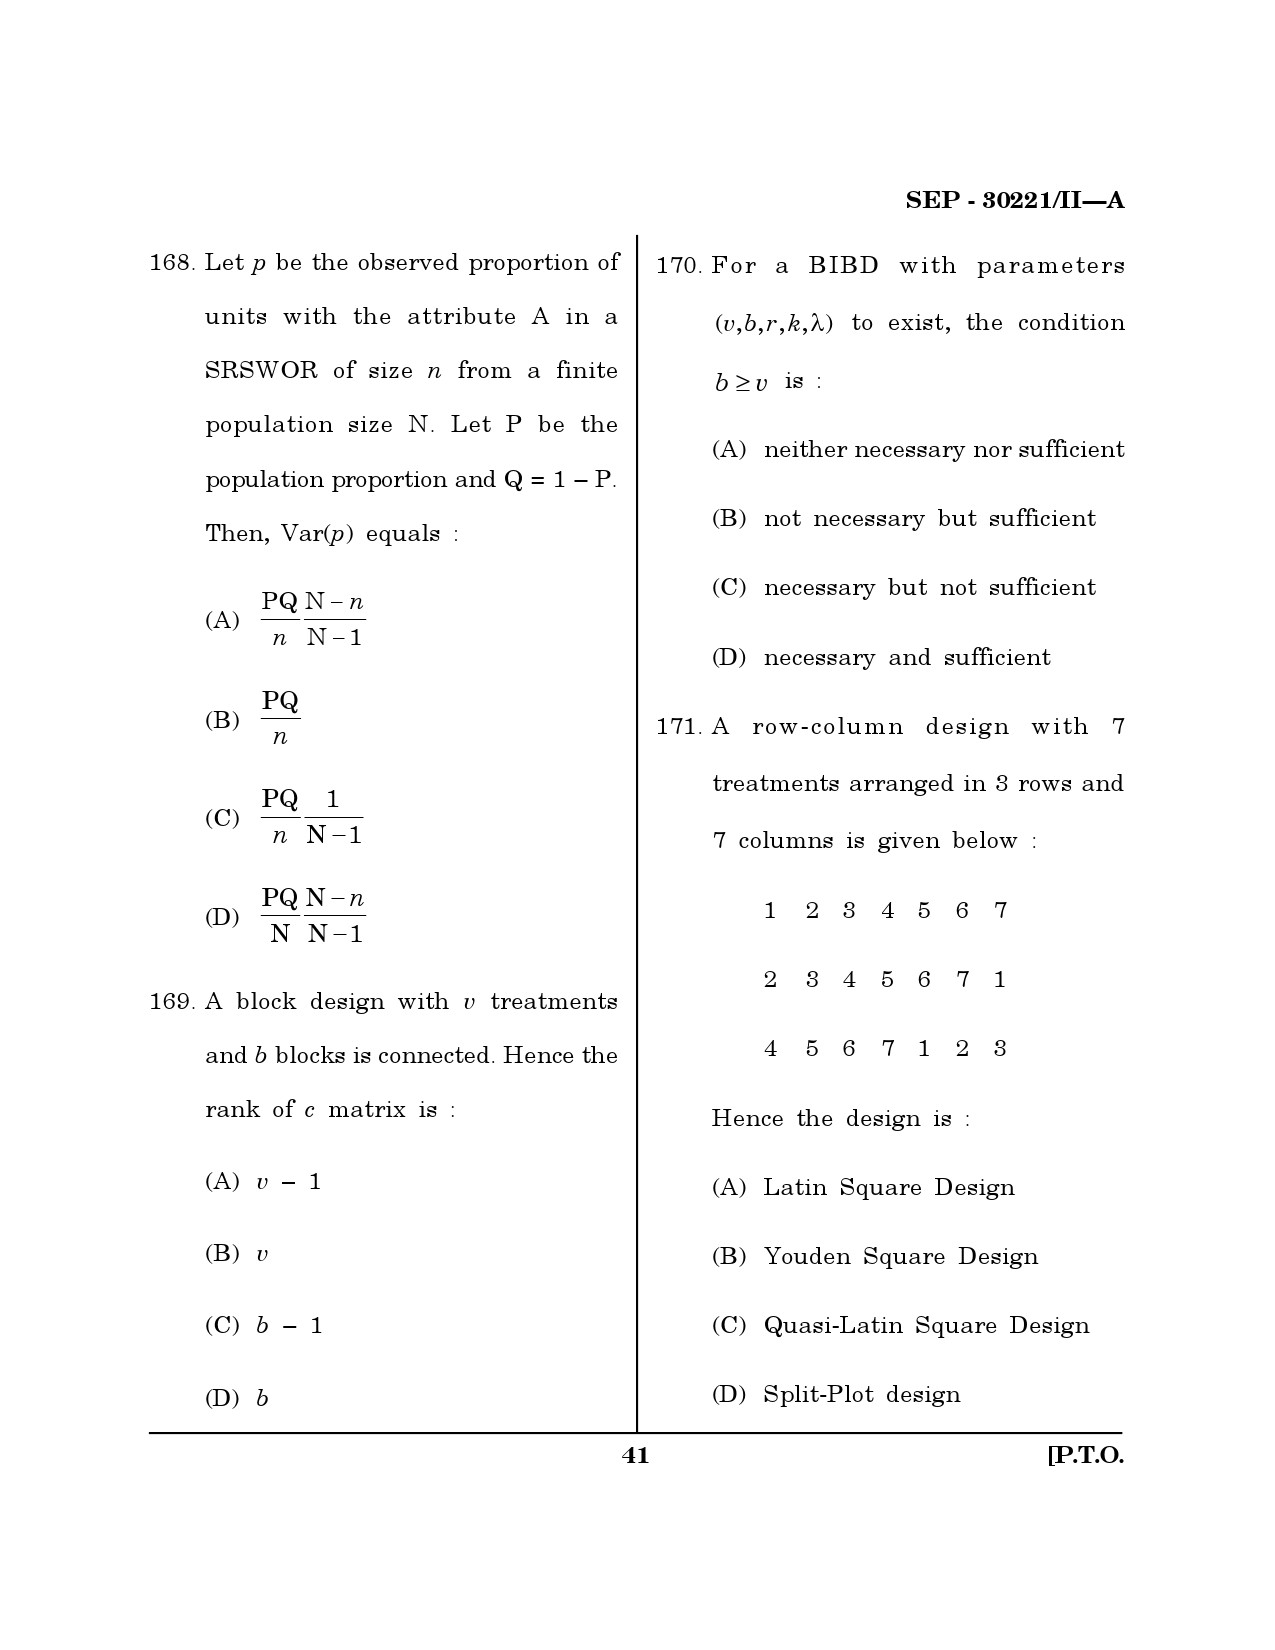 Maharashtra SET Mathematical Sciences Exam Question Paper September 2021 40